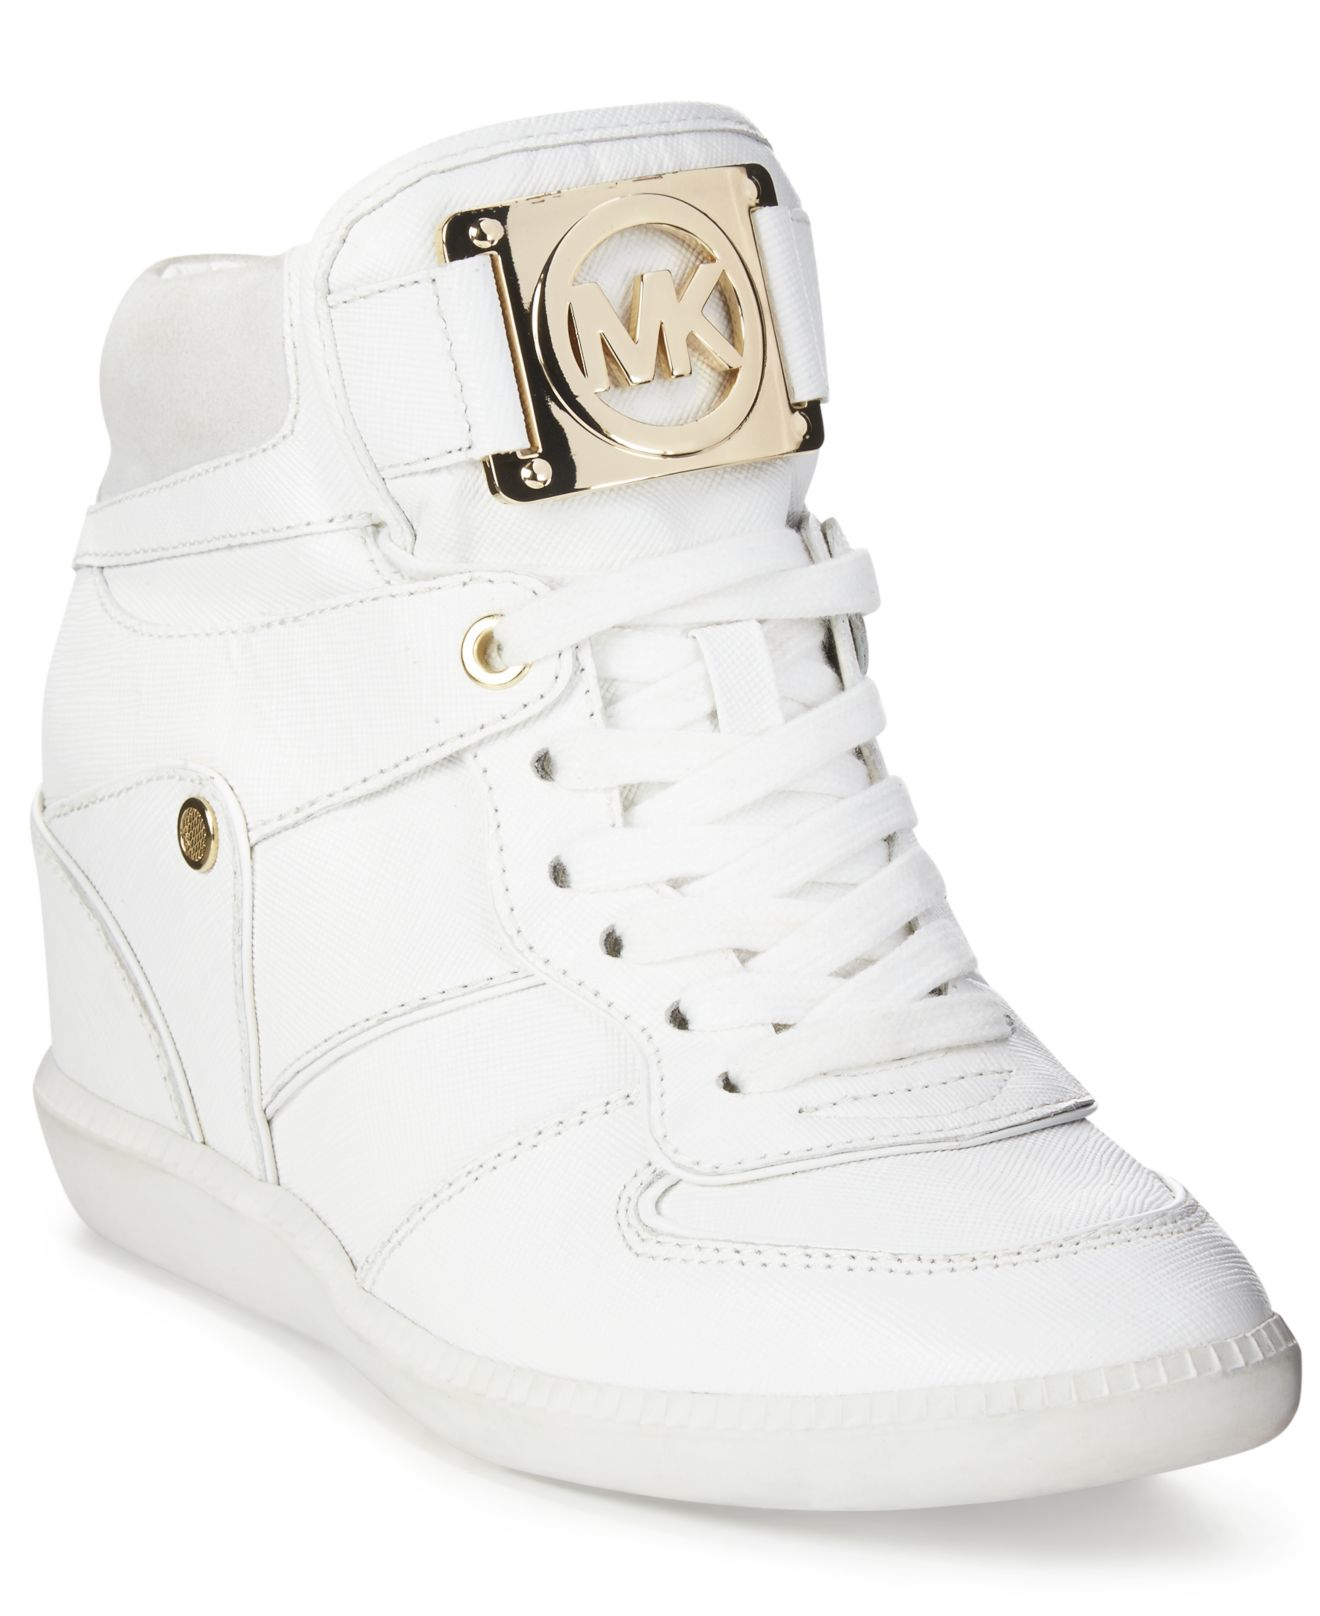 michael kors nikko high top white sneakers gold chain - Marwood  VeneerMarwood Veneer